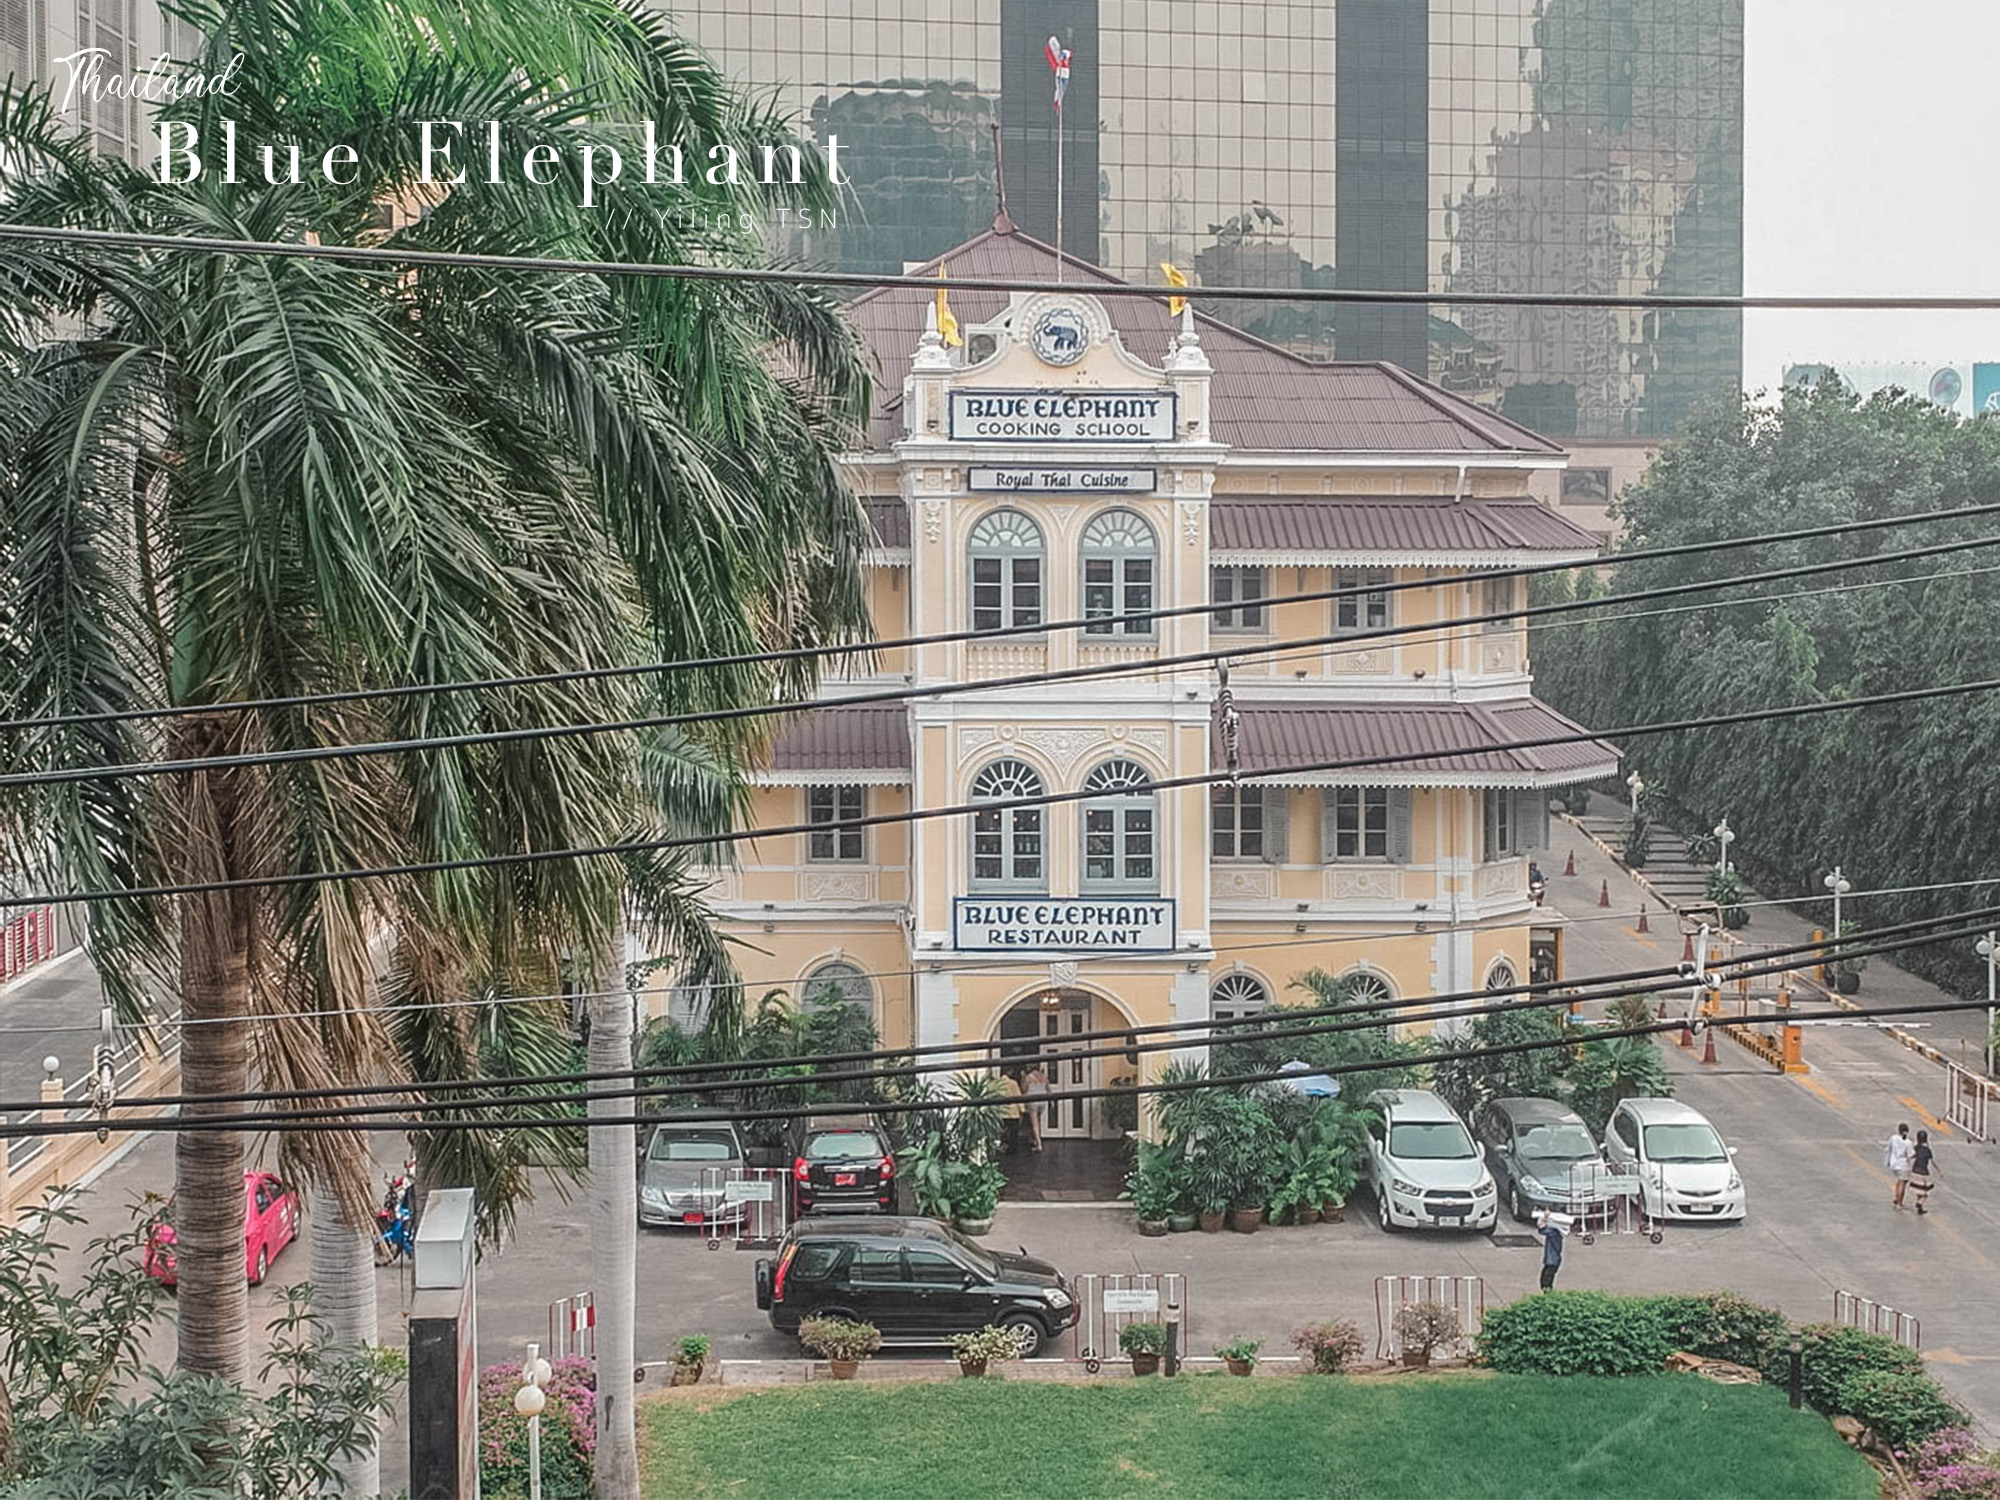 曼谷美食推薦｜藍象餐廳 Blue Elephant：泰式皇家宮廷料理，米其林推薦精緻餐點